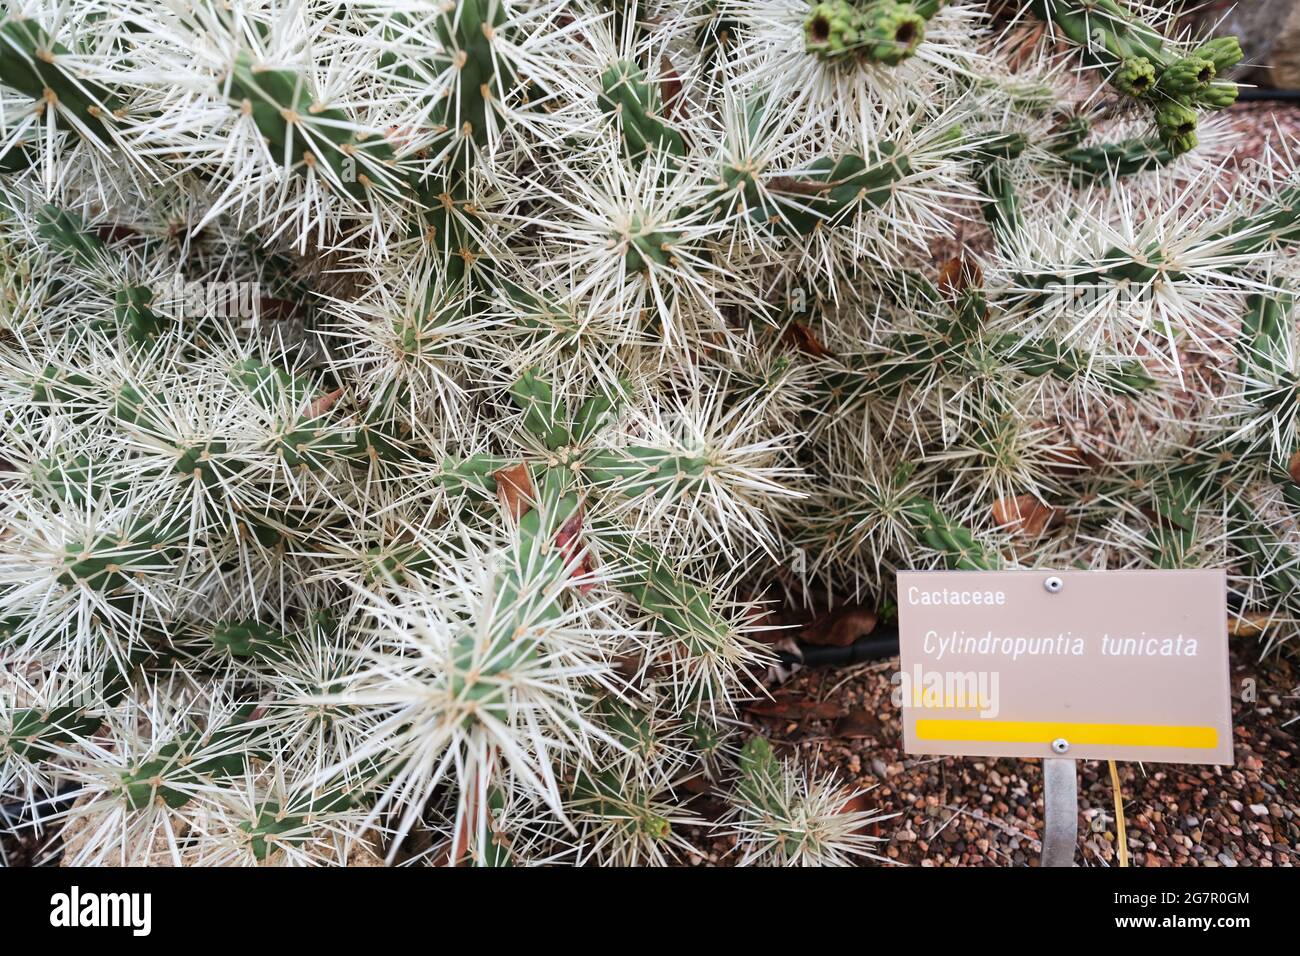 Una Cylindropuntia tunicata piuttosto costosa nei Giardini Botanici di Adelaide in Adelaide Australia Foto Stock